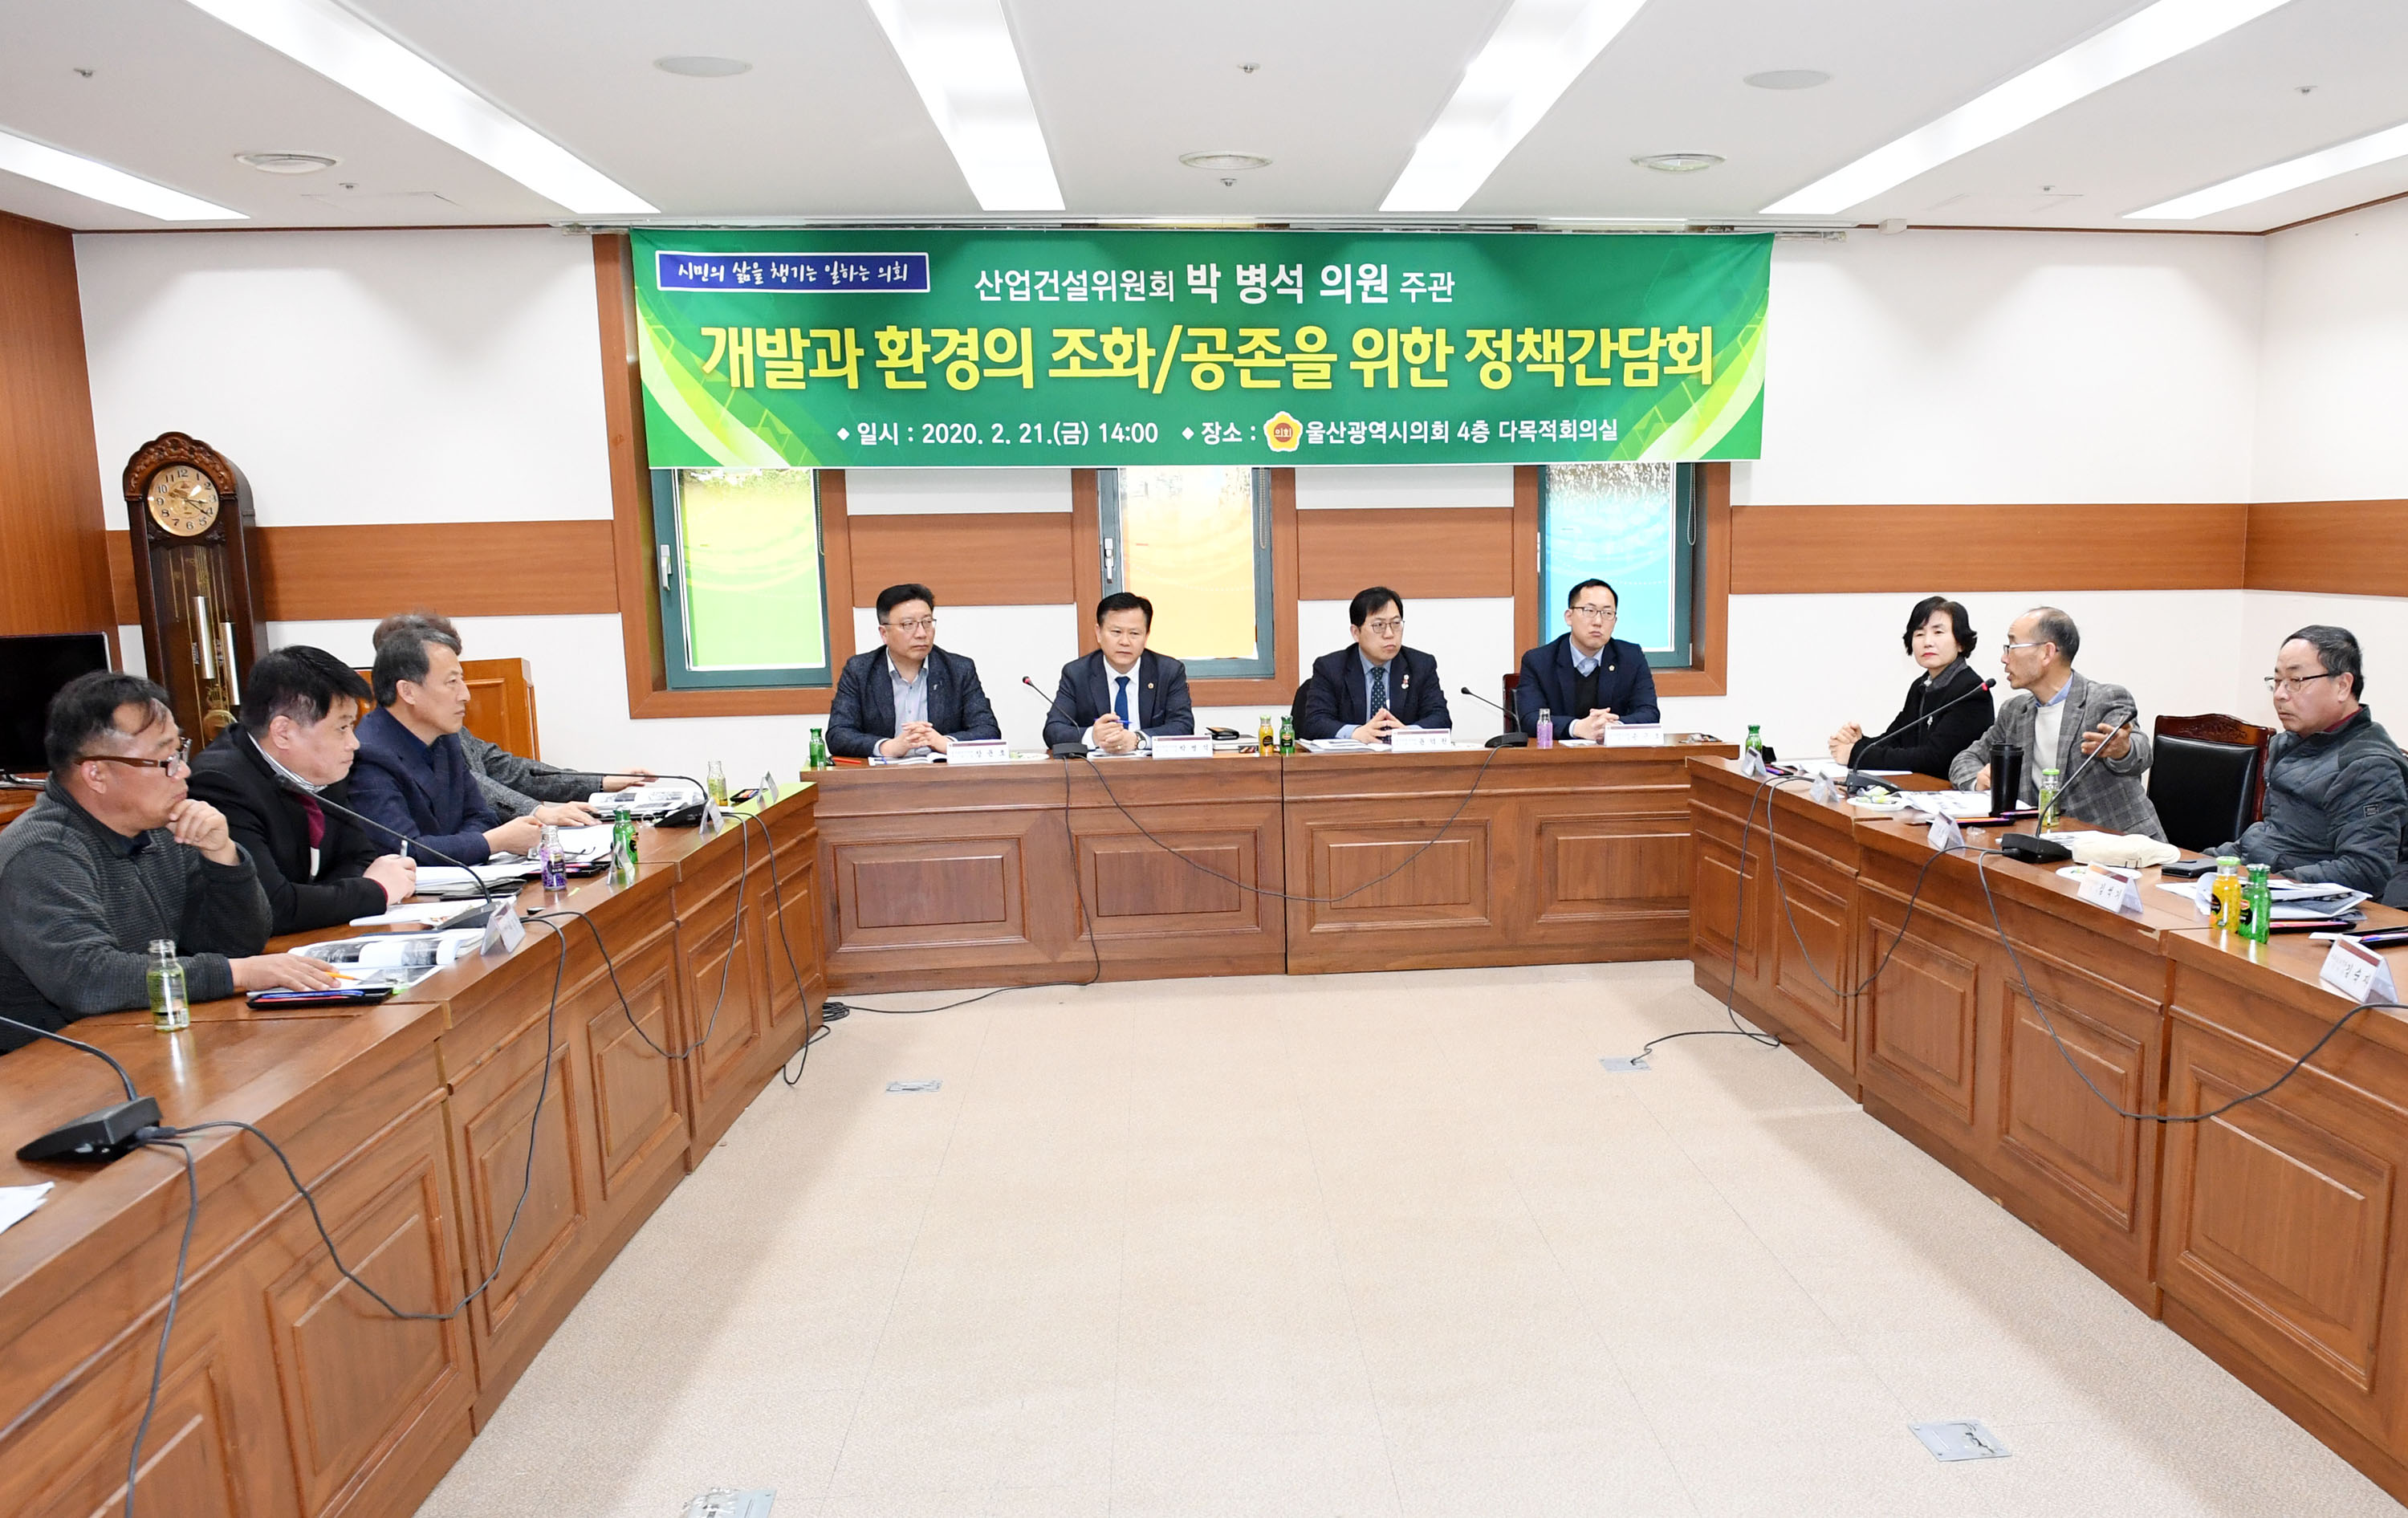 박병석 의원 개발과 환경의 조화/공존을 위한 정책간담회 개최2